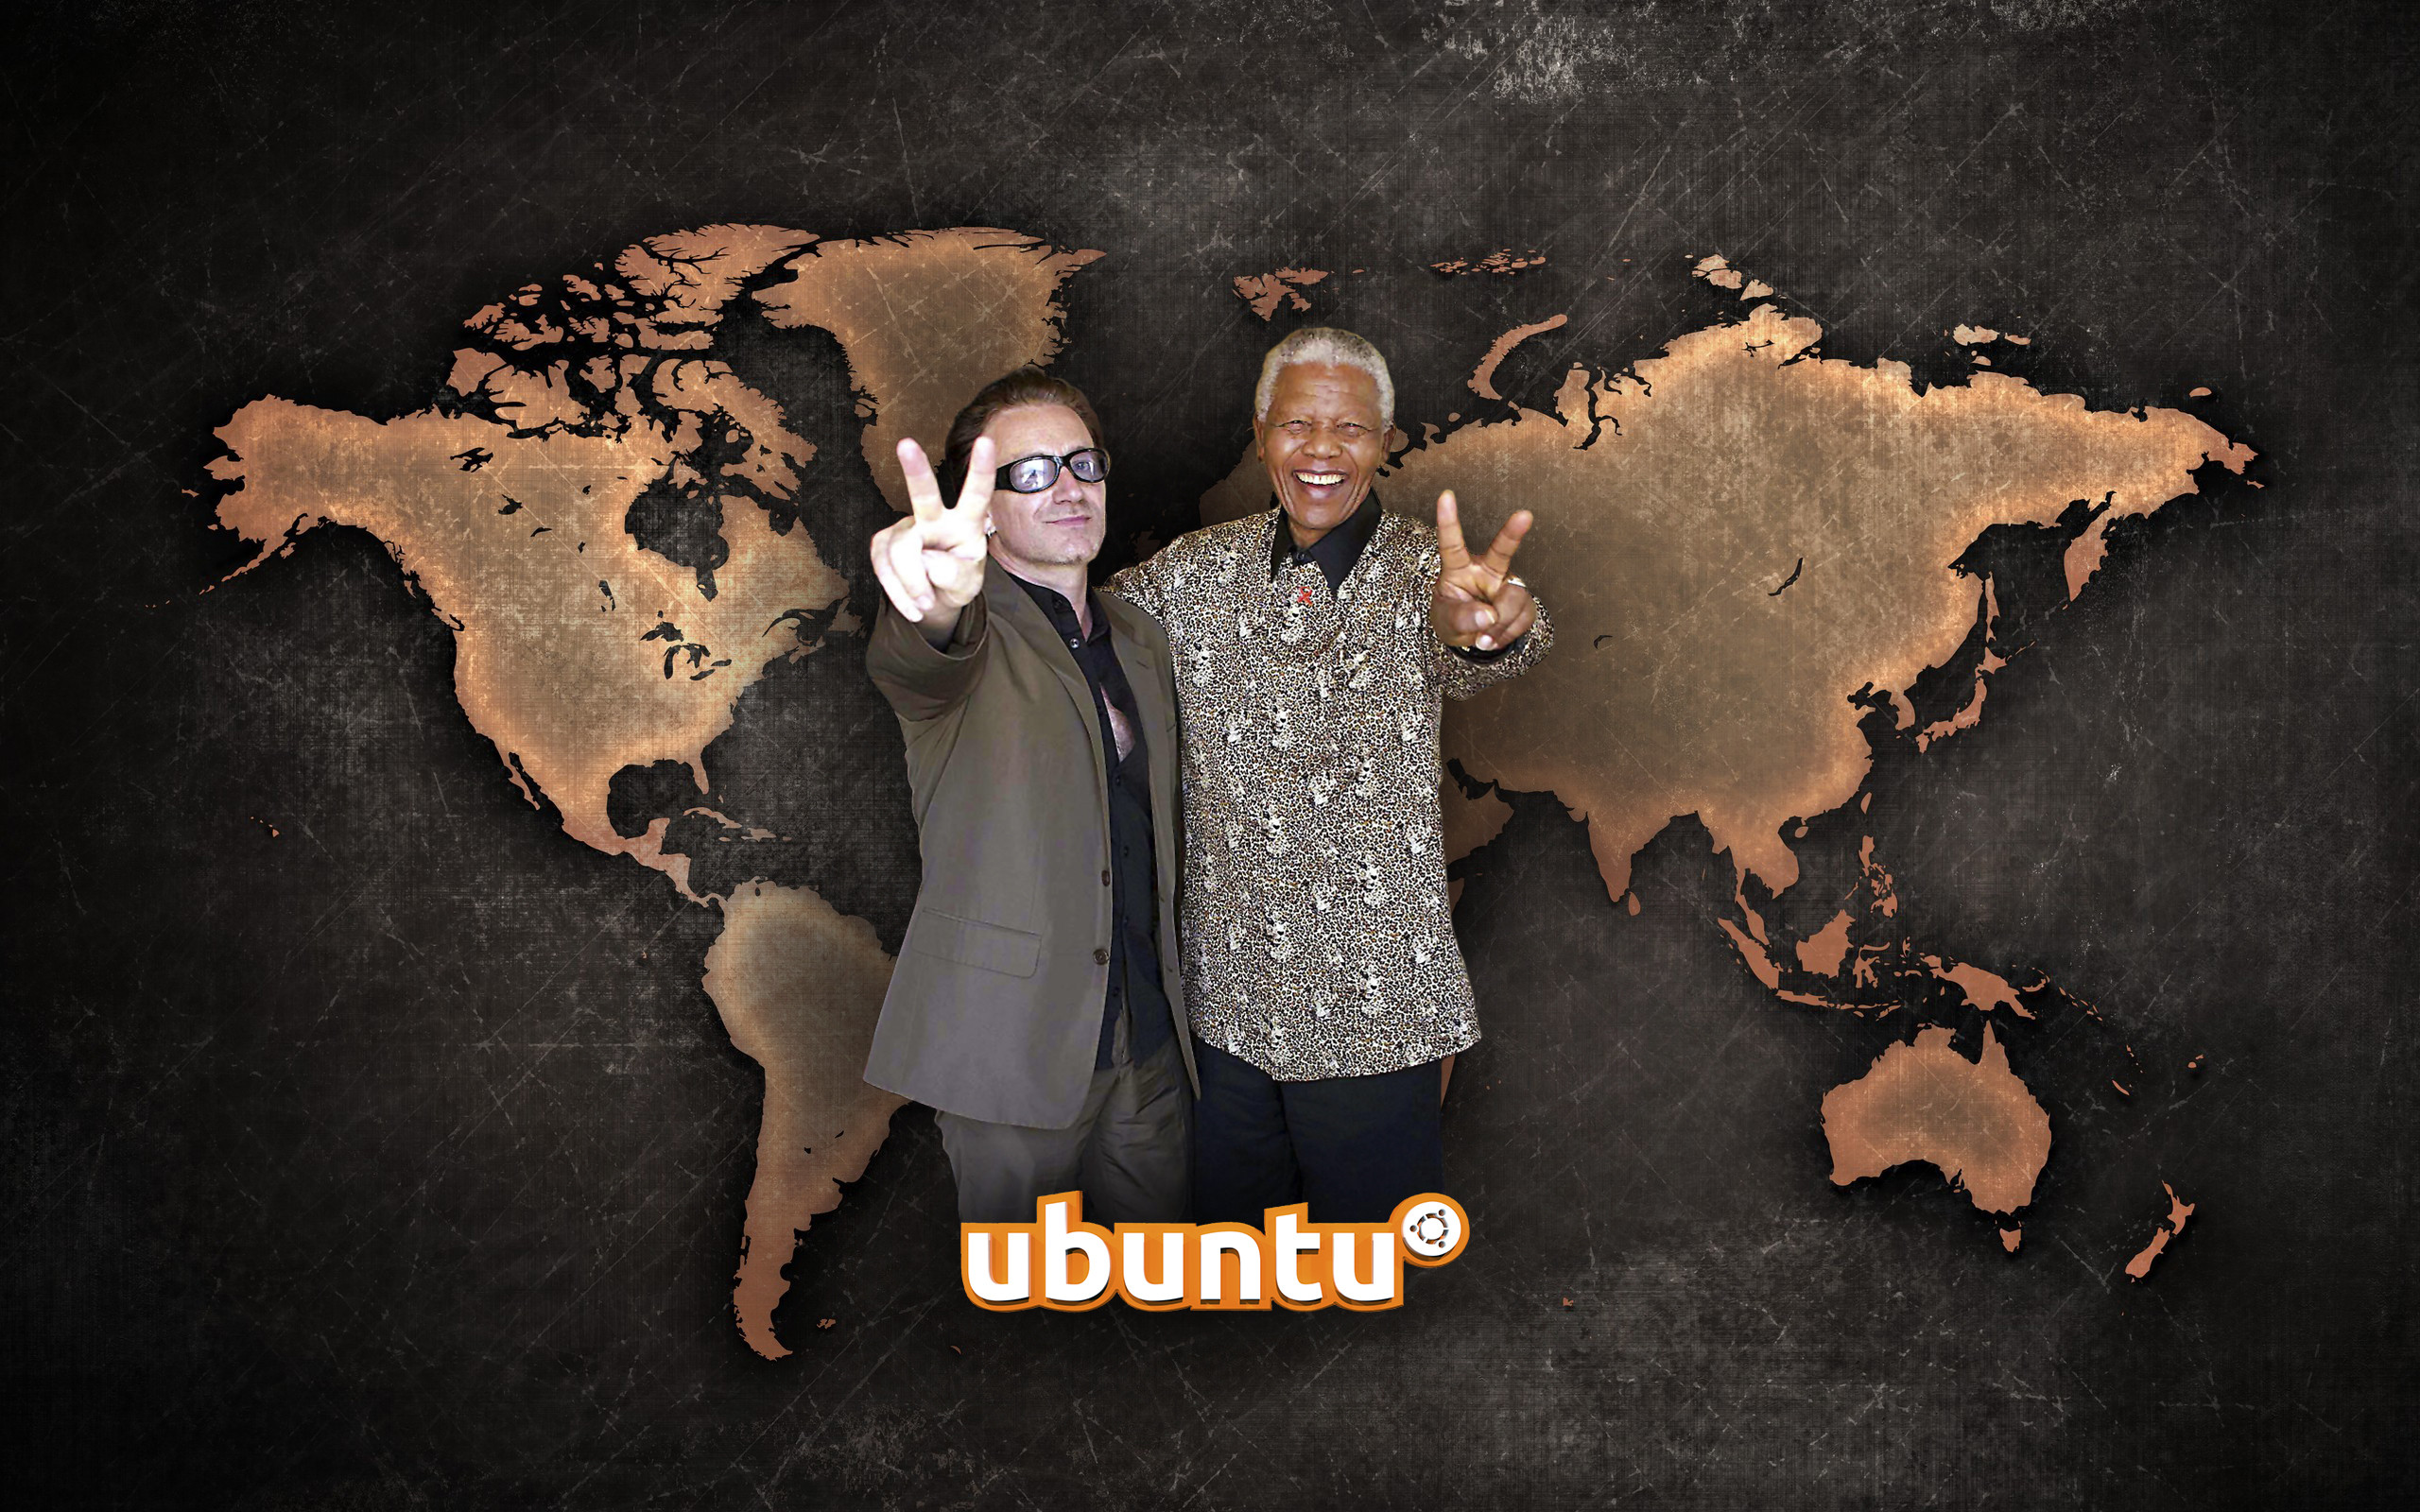 2560x1600 ... U2 and Nelson Mandela, wallpaper for Ubuntu by WalentyWalewski